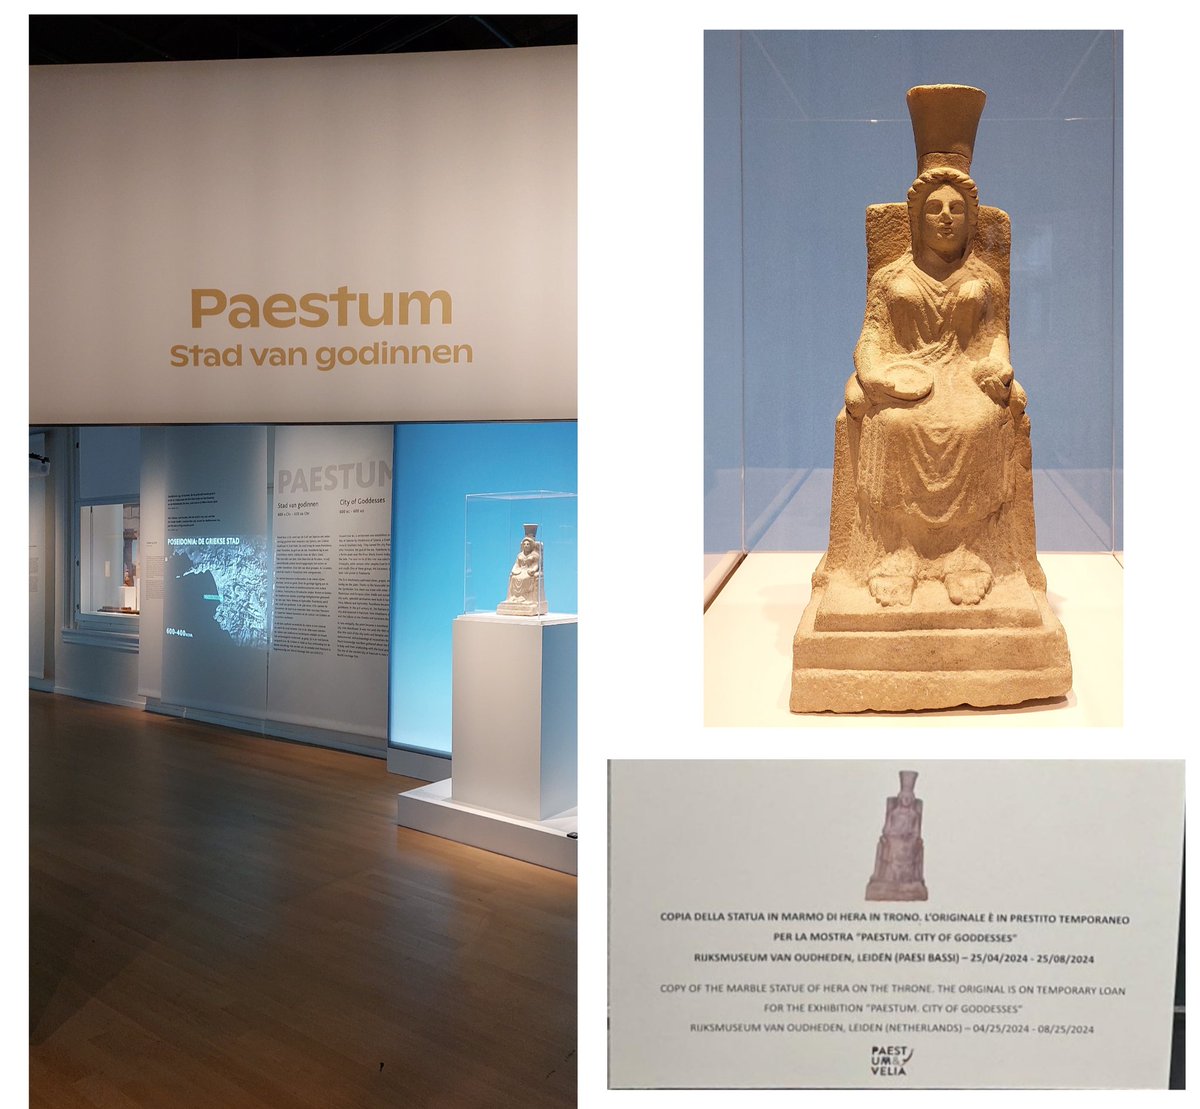 Paestum, stad van de godinnen in @RM_Oudheden in Leiden Hera met granaatappel, afkomstig uit het archeologisch museum in Paestum. Bij een kopie van het beeld in het museum in Paestum zag mijn vriendin @RozavanderVeer twee weken geleden een opmerkelijk bordje staan. 🤭